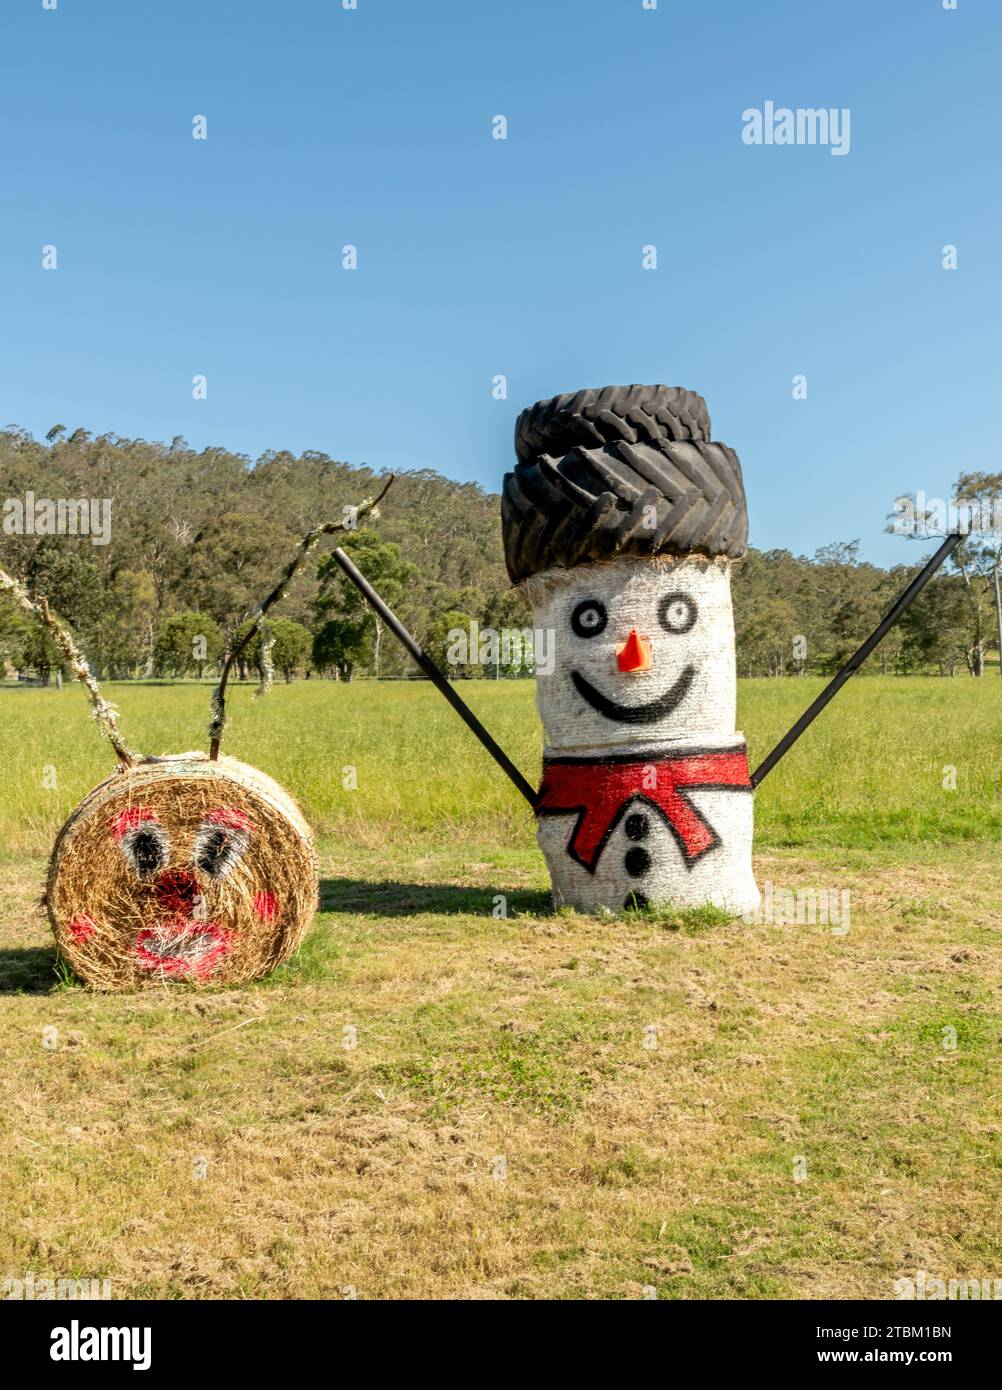 Maitland, Nouvelle-Galles du Sud, Australie. Déc 13, 2021 exposition de Noël d'art de balle de foin le long d'une autoroute. balles de foin peintes célébrant la saison des fêtes. Banque D'Images